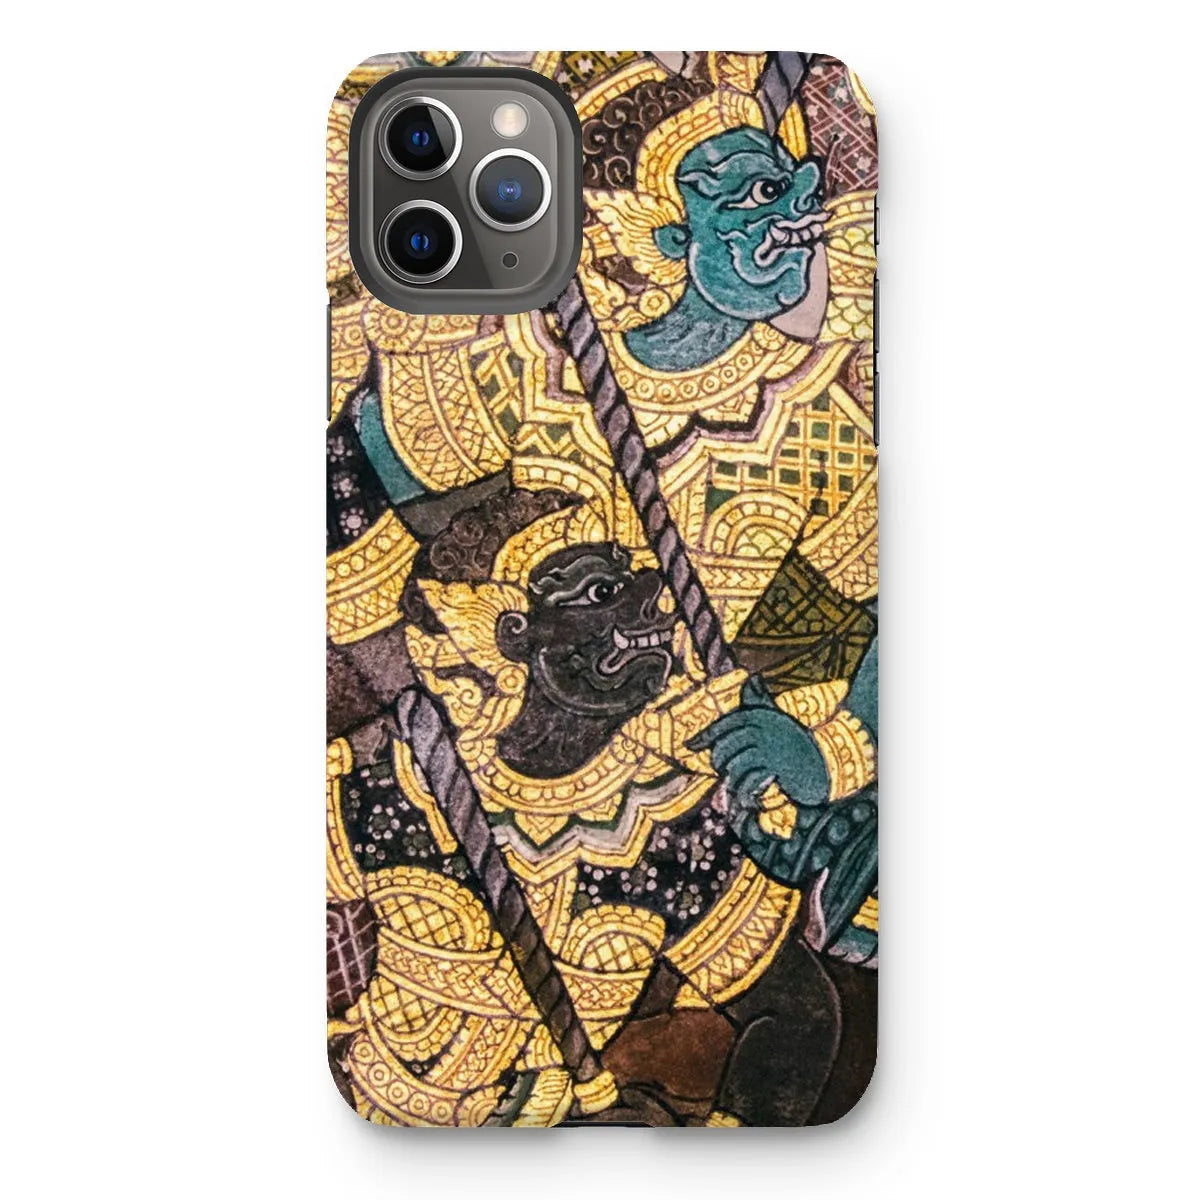 Action Men - Ancient Thai Temple Art Phone Case - Iphone 11 Pro Max / Matte - Mobile Phone Cases - Aesthetic Art